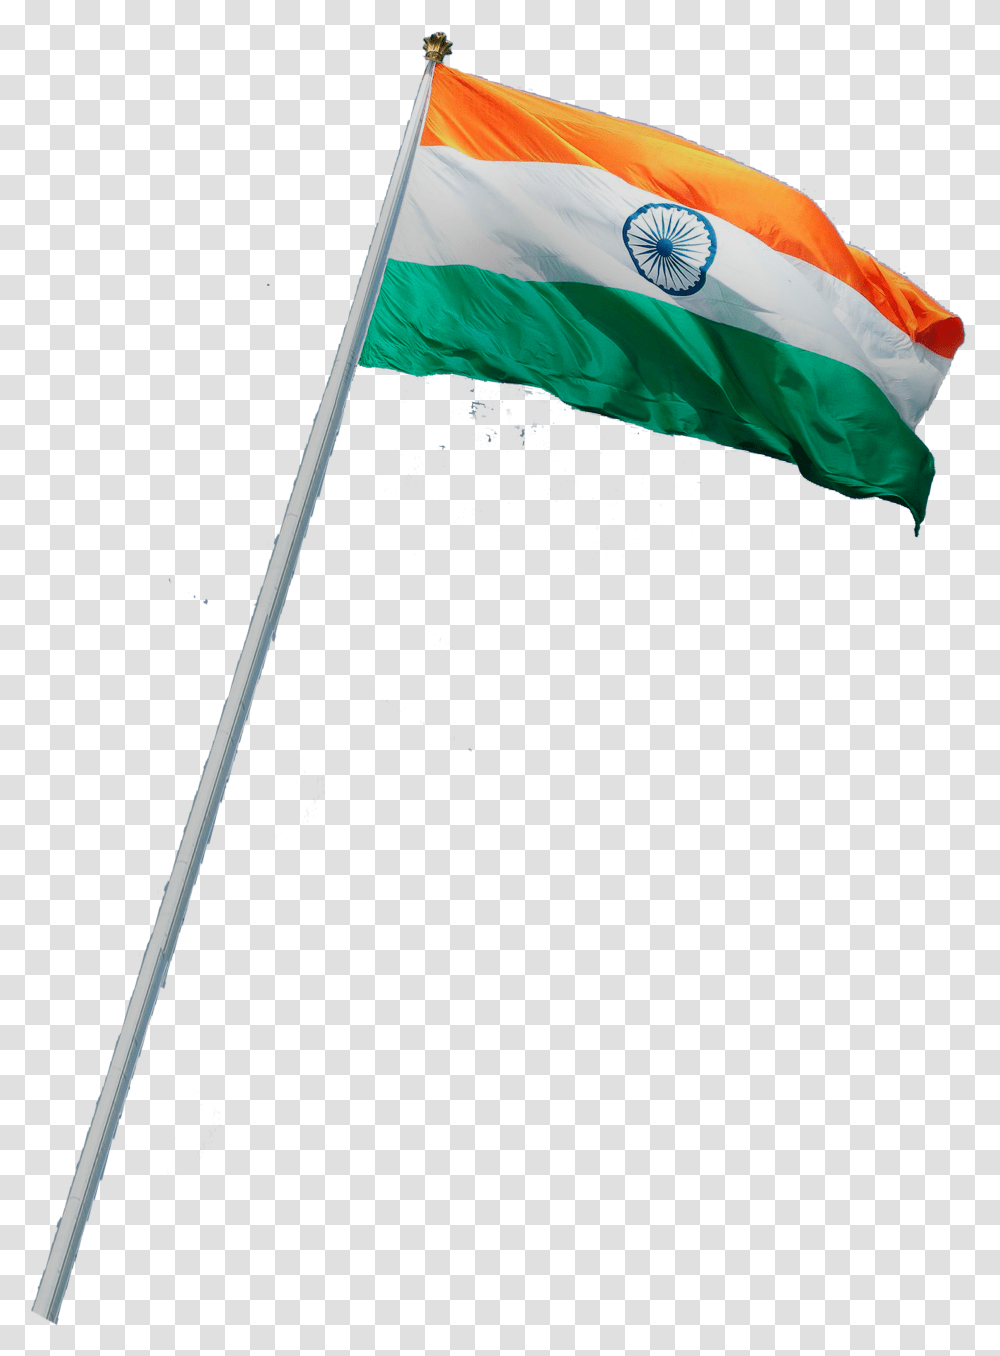 India Flag Image Indian Flag Hd, American Flag, Emblem Transparent Png